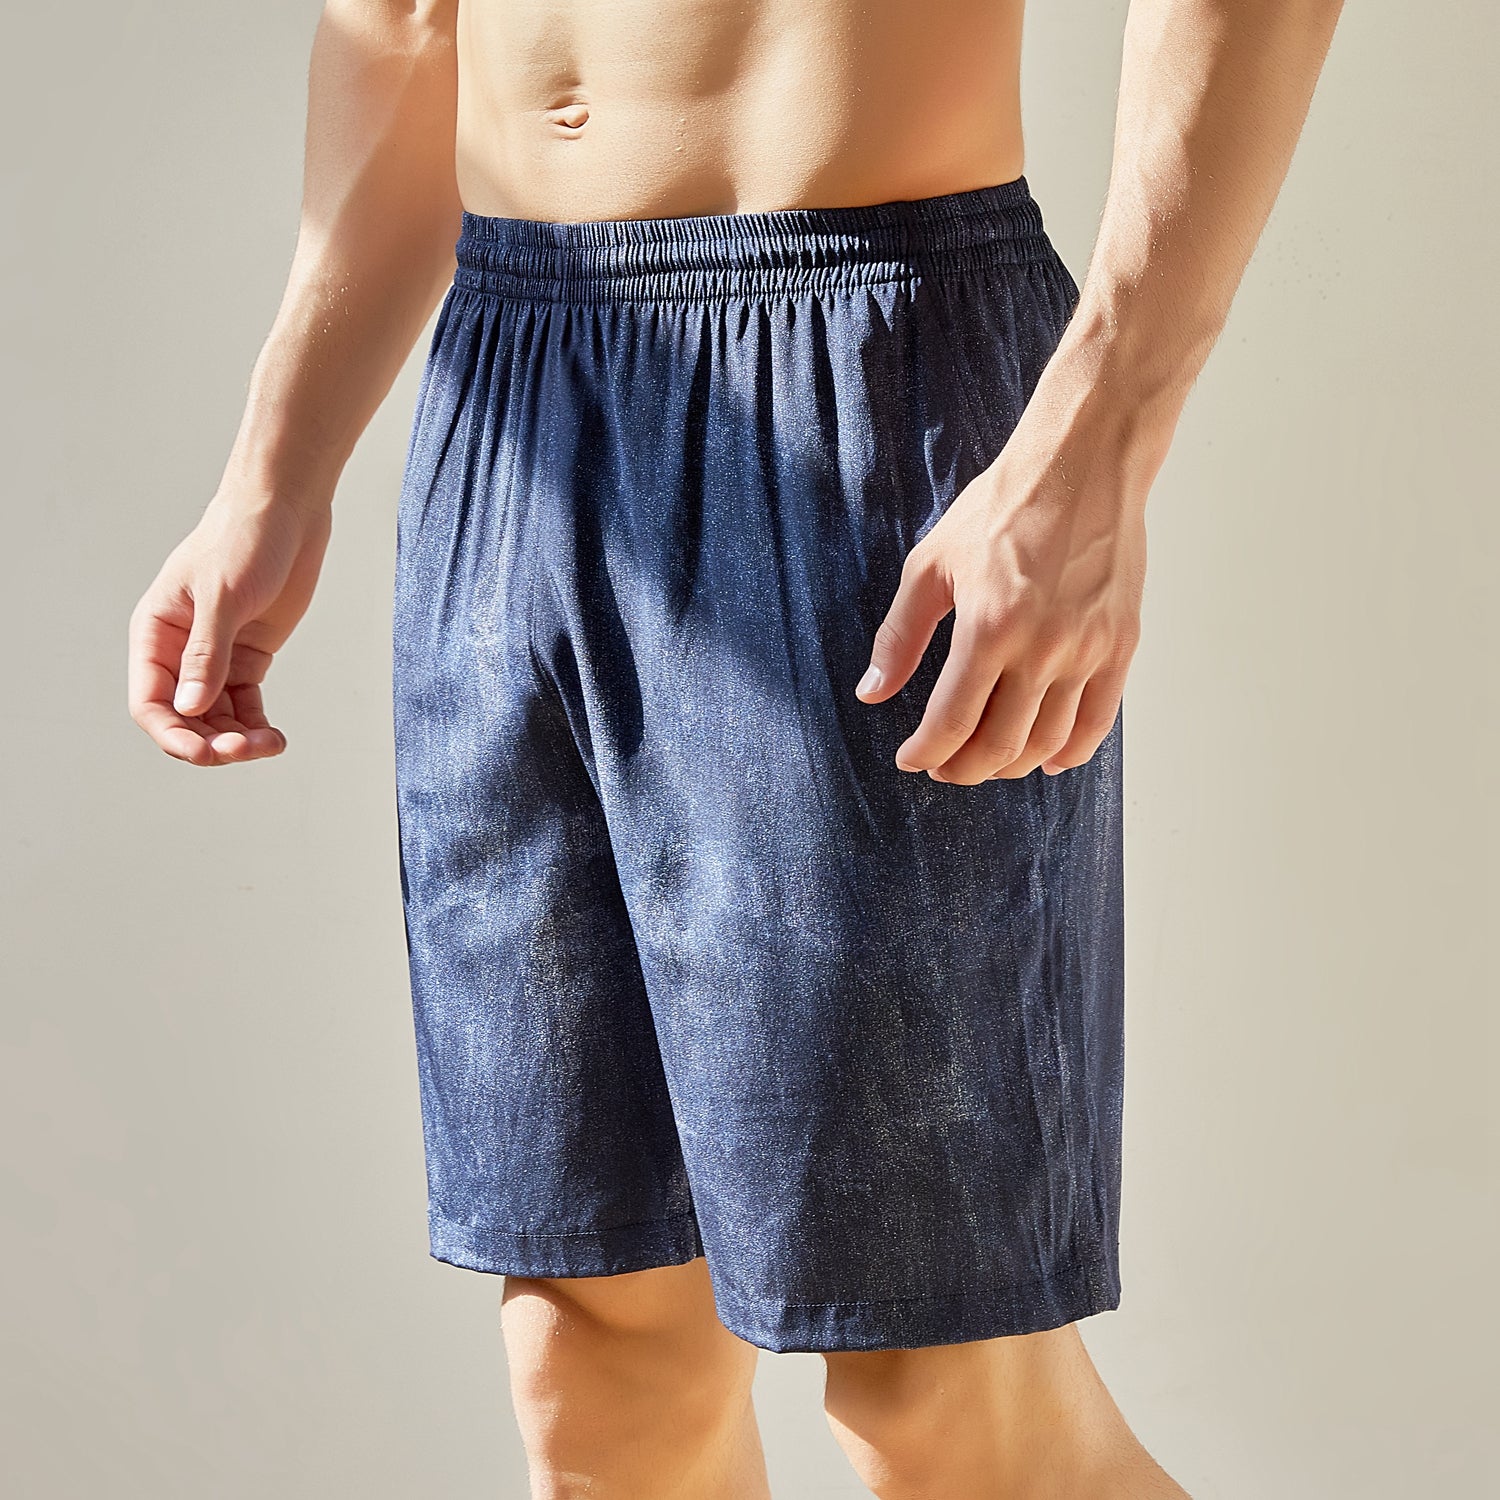 Men's Silk Boxers, 100% Mulberry Silk Underwear